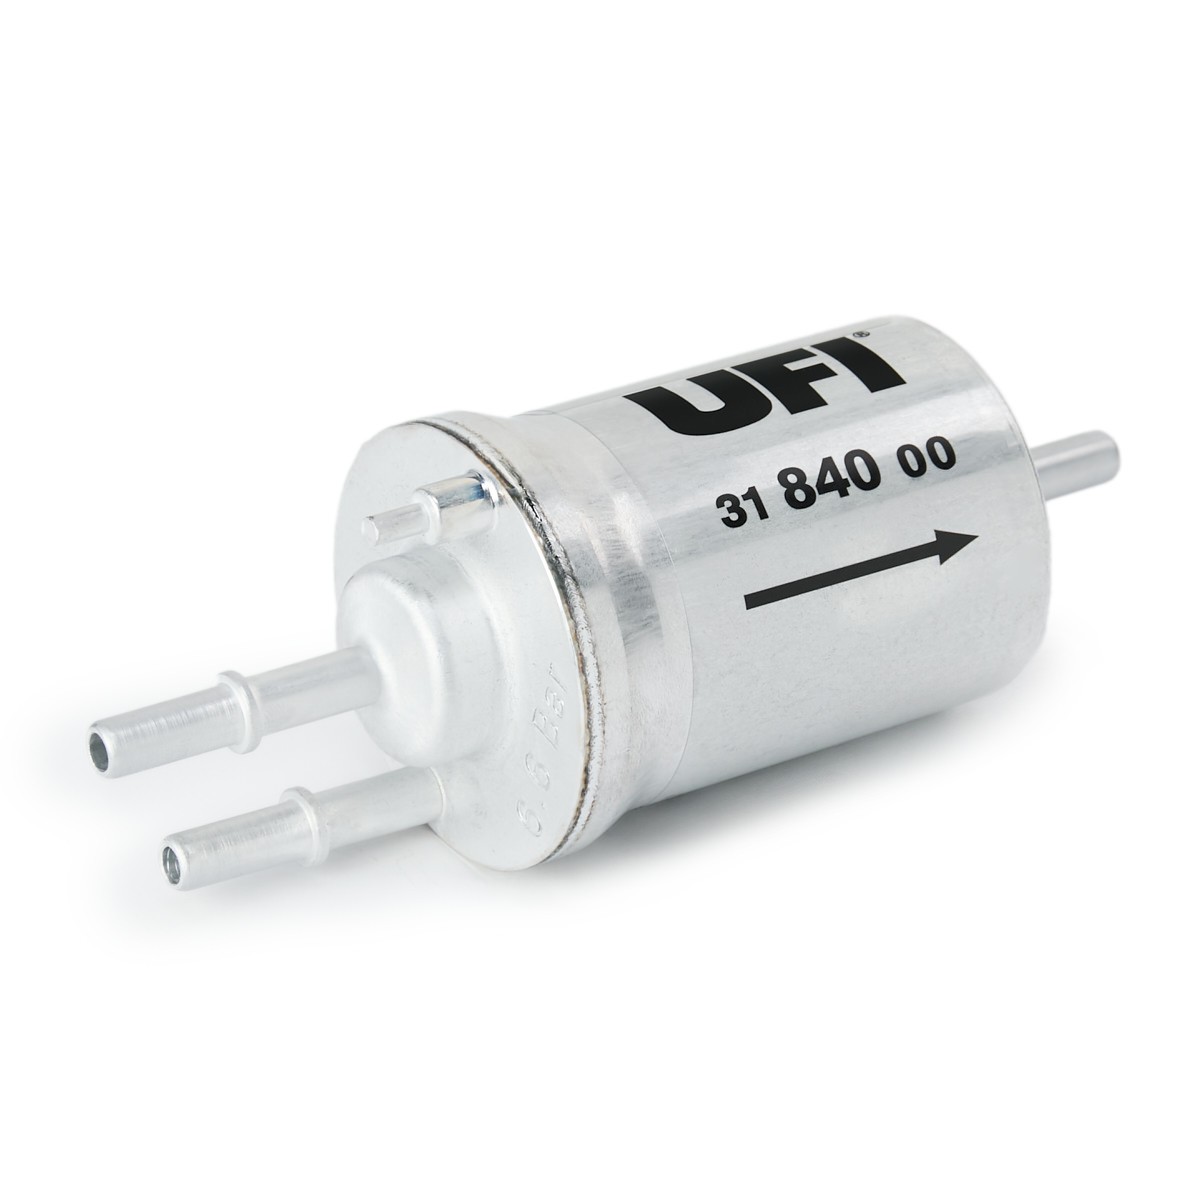 UFI 31.840.00 Fuel filter Filter Insert, 8mm, 8mm